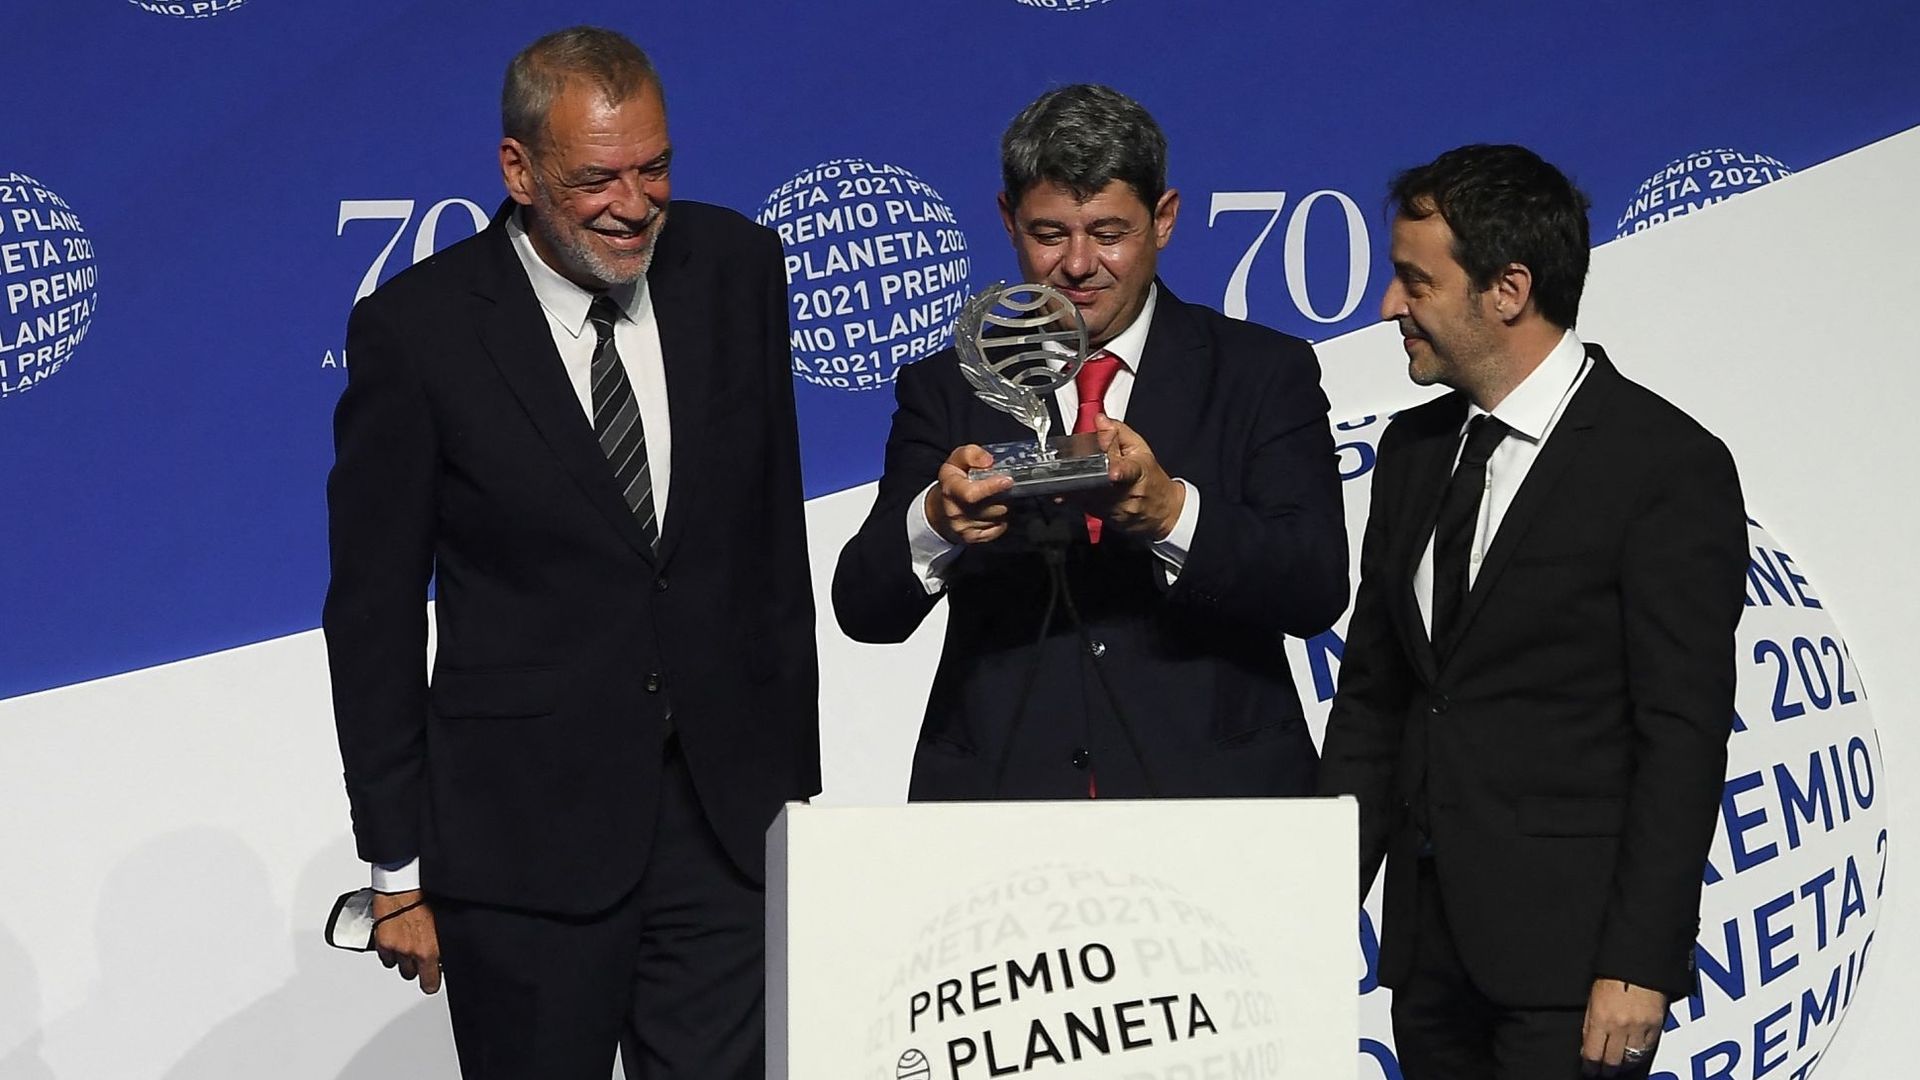 Jorge Diaz, Antonio Mercero et Augustin Martinez, les trois auteurs qui écrivaient sous le pseudonyme de Carmen Mola, recevant le prix Premio Planeta 2021